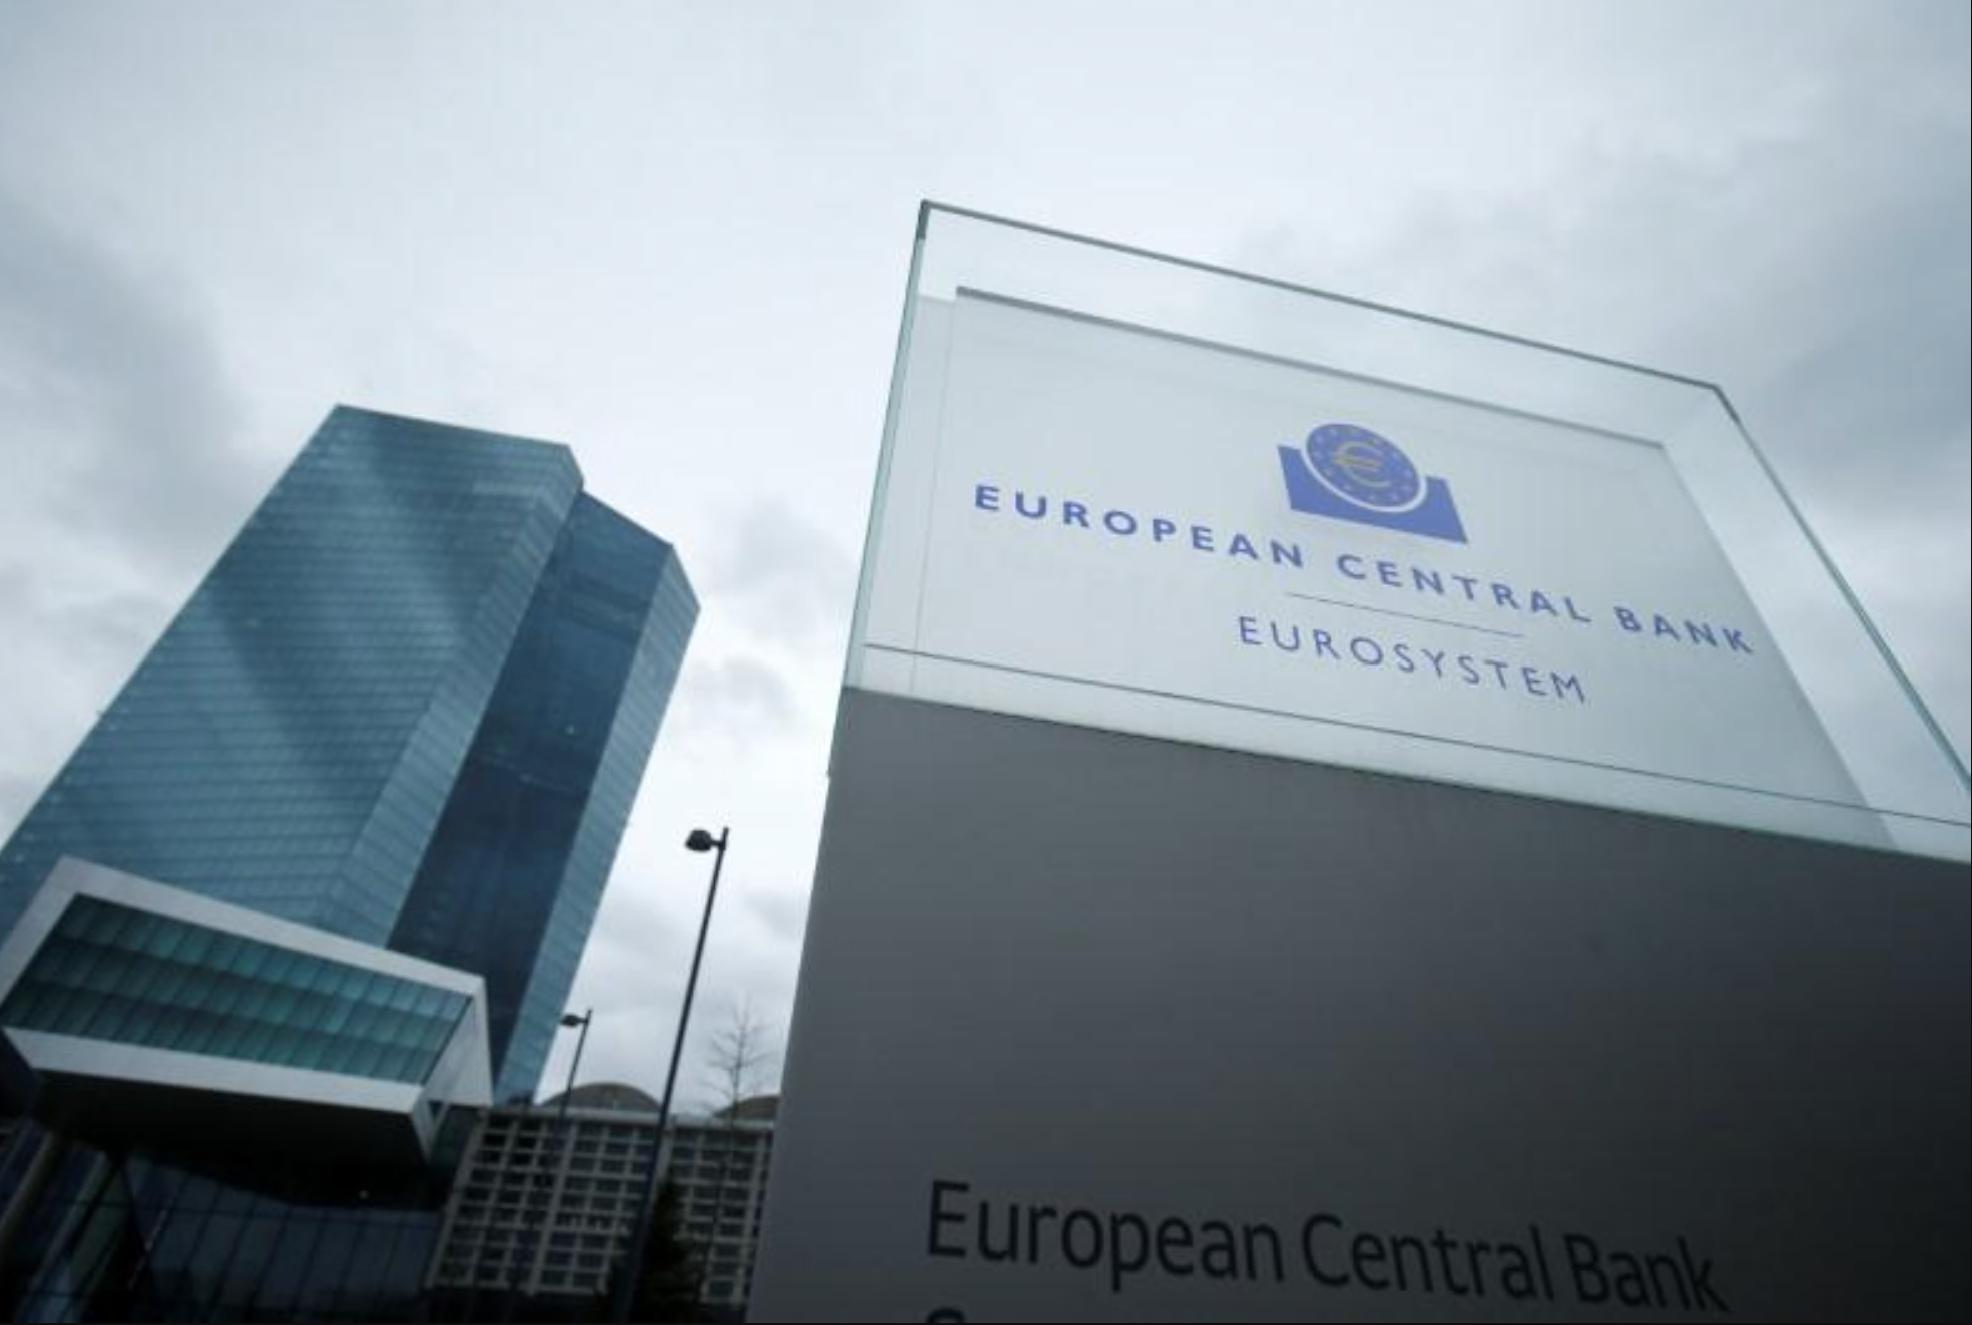 بانک مرکزی اروپا در گامی بزرگ نرخ بهره را 50 واحد پایه افزایش داد و به دوران نرخ بهره منفی پایان داد